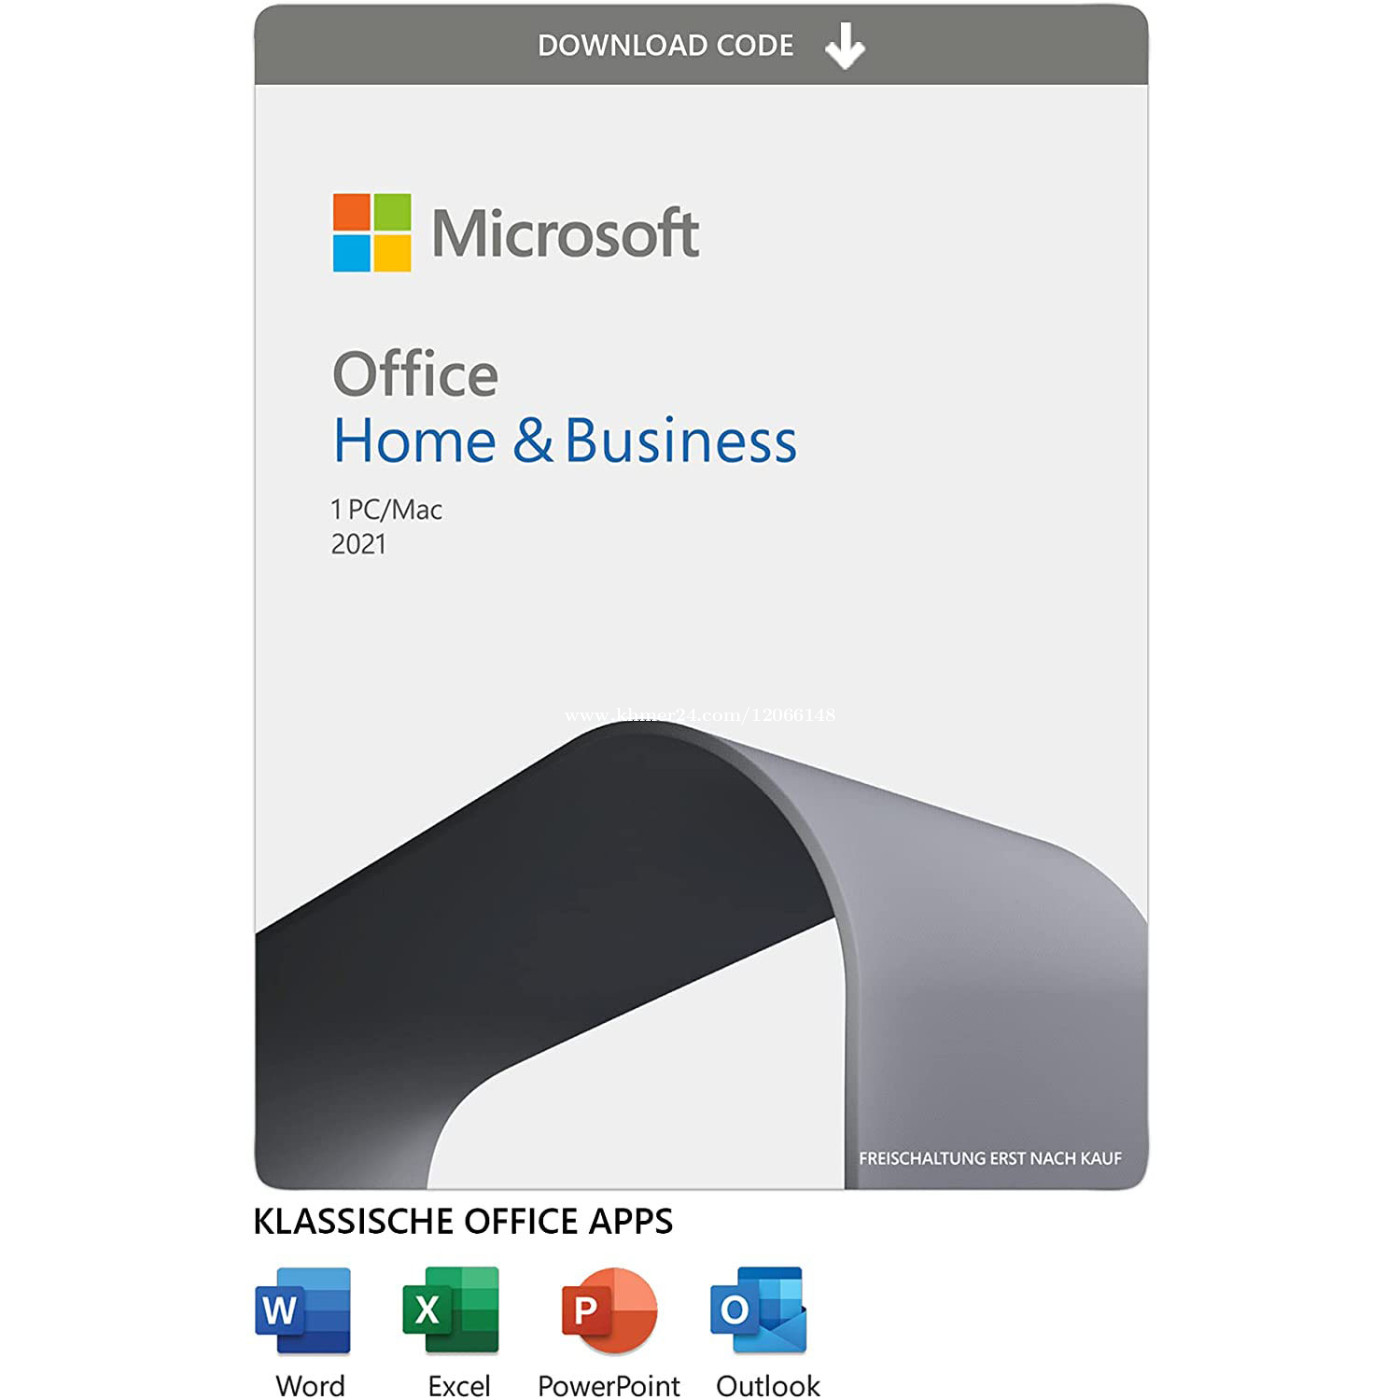 その他Microsoft  Office Home & Business 2021